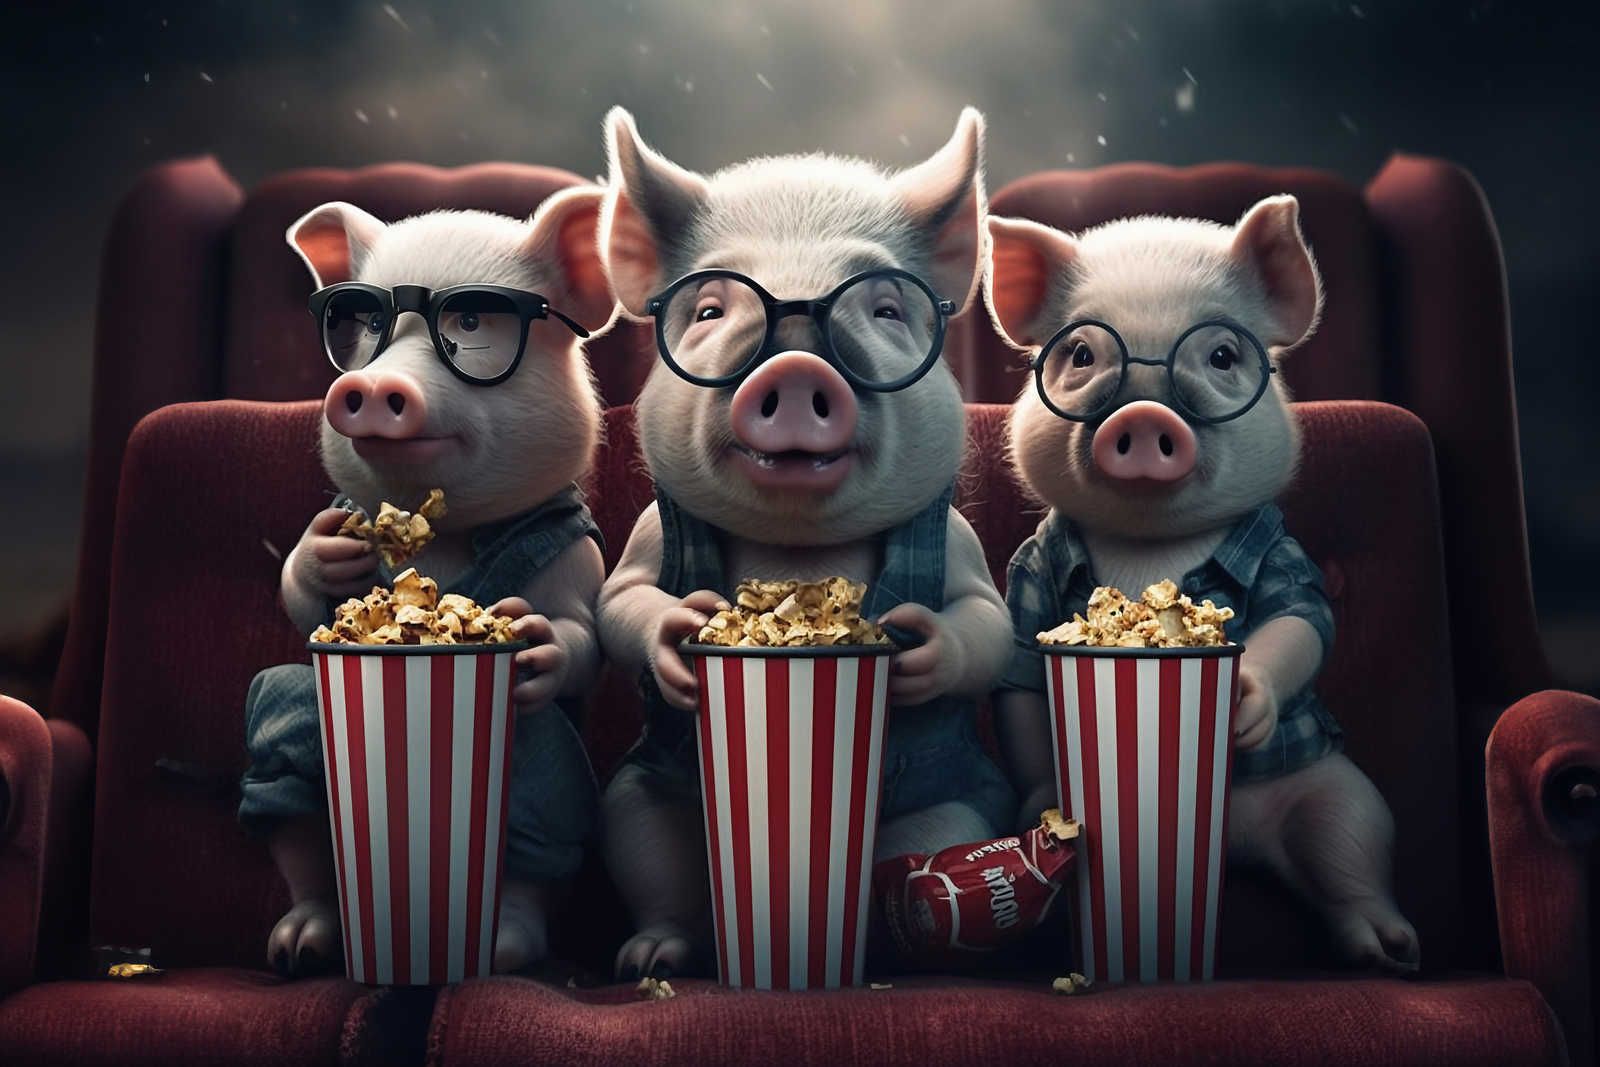             Toile KI »popcorn pigs« - 120 cm x 80 cm
        